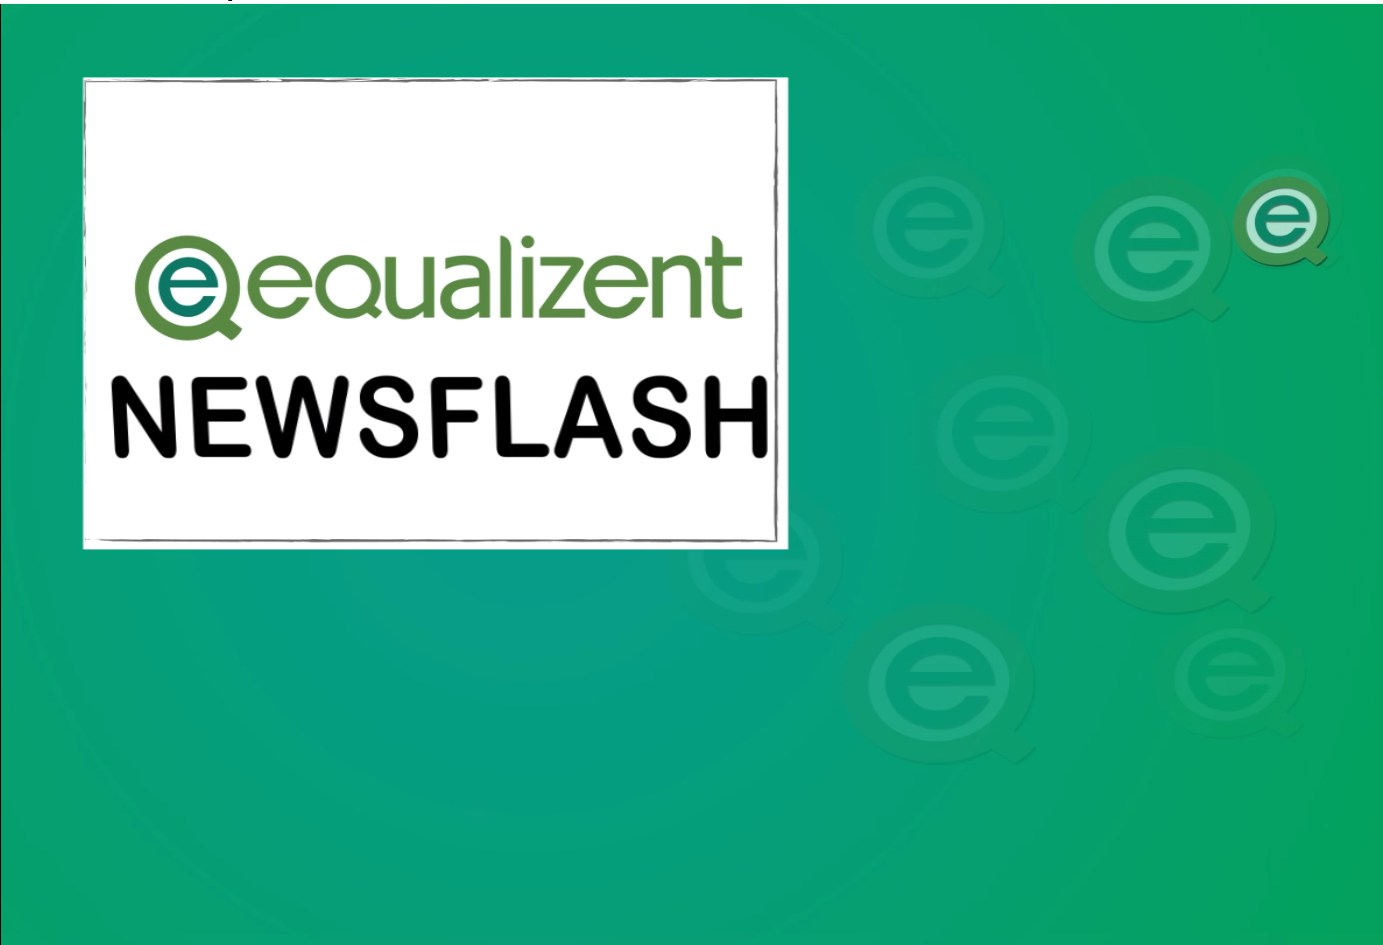 grün-türkiser Hintergrund. Weißes Feld mit Text "equalizent Newsflash"